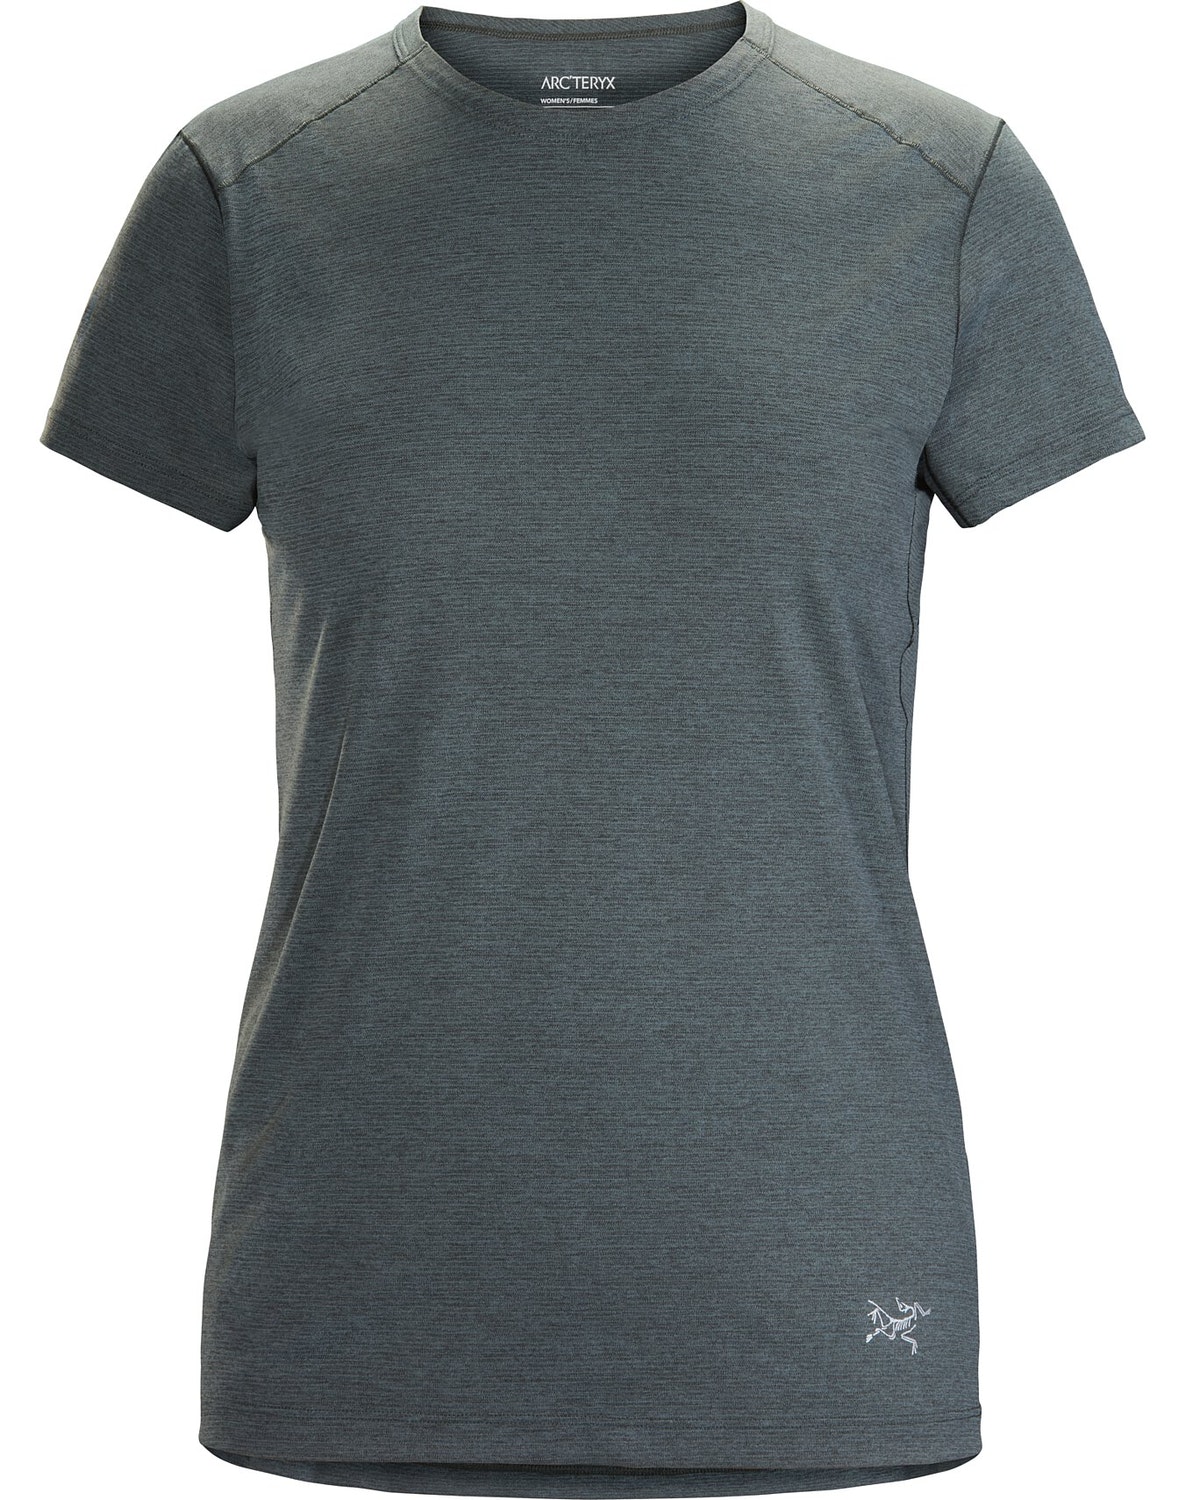 T-shirt Arc'teryx Quadra Crew Neck Donna Blu Marino - IT-6337135